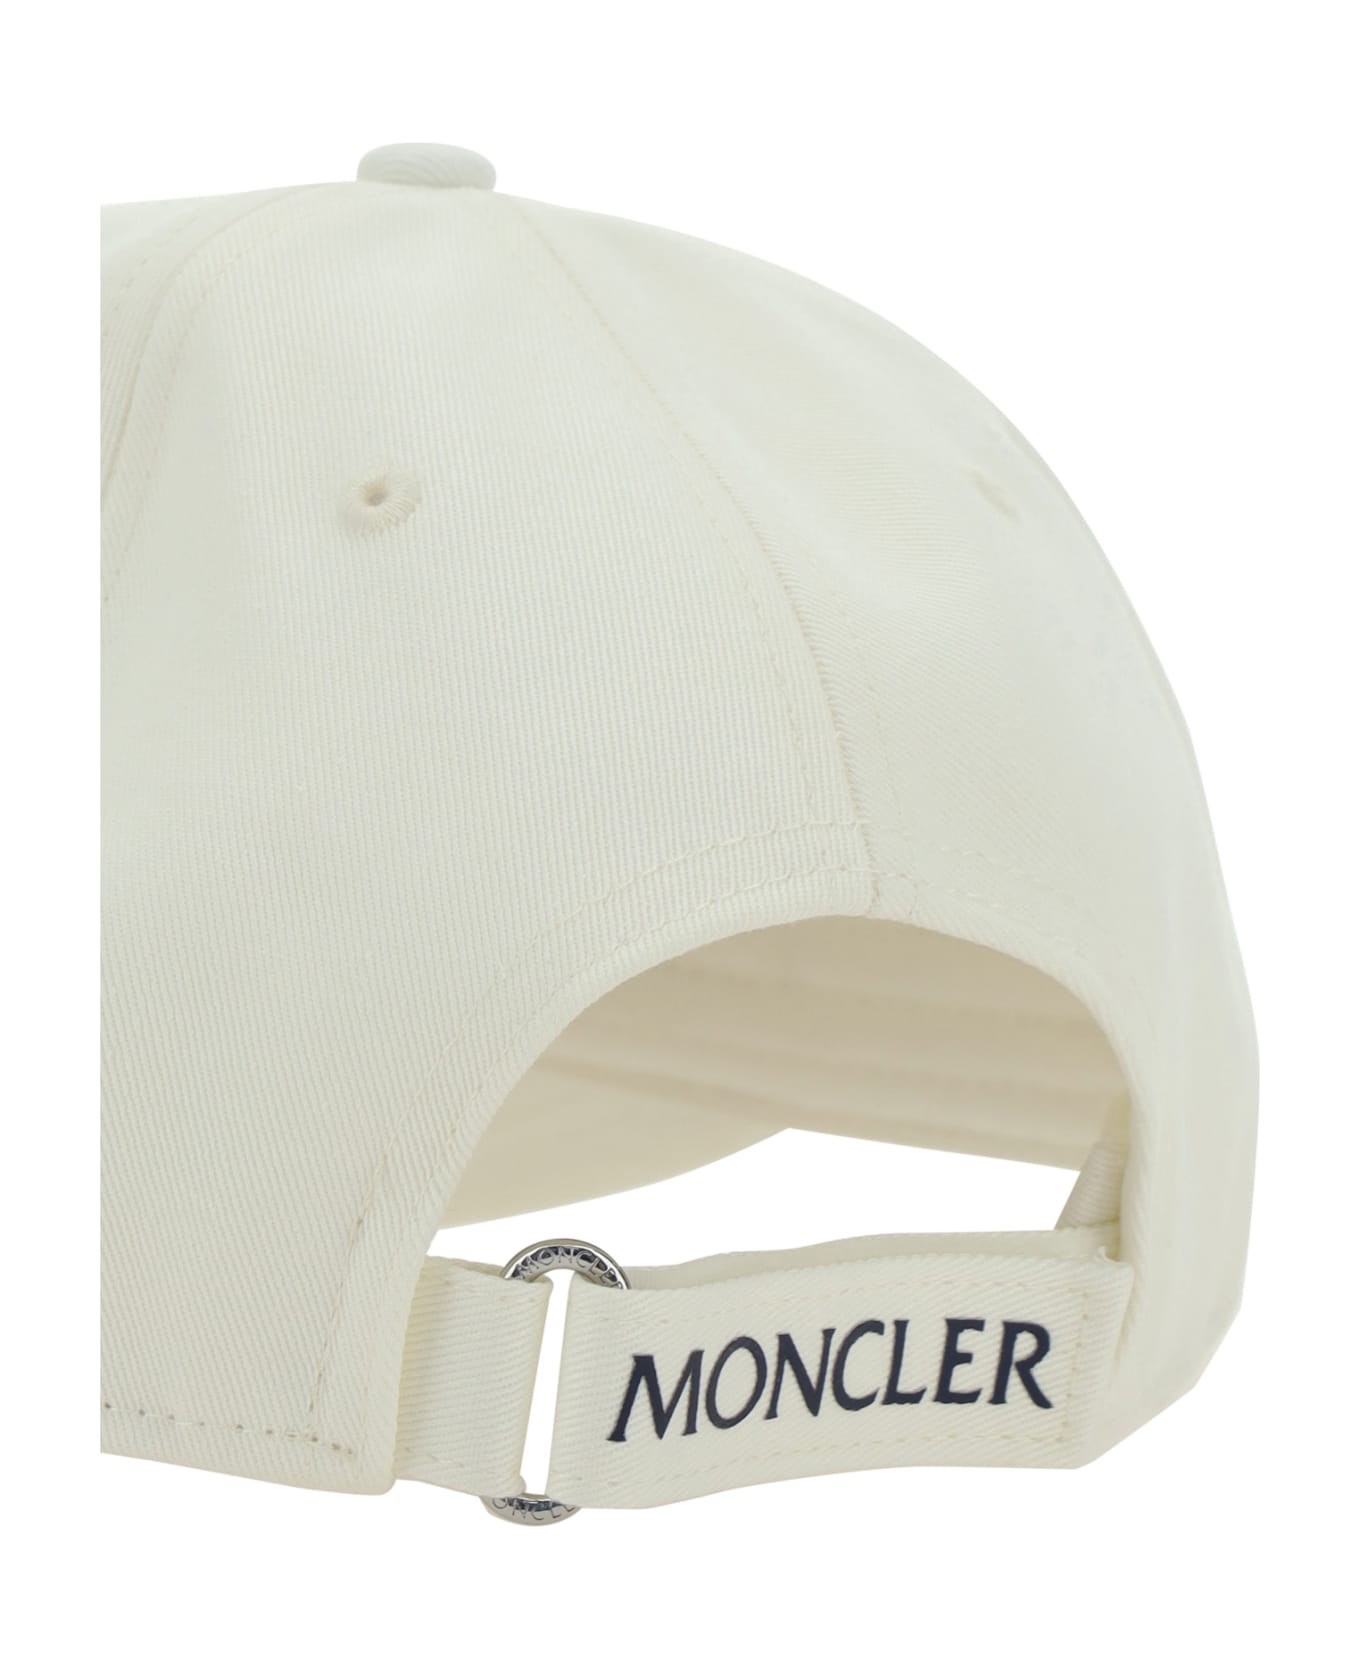 Moncler Baseball Cap - Non definito 帽子